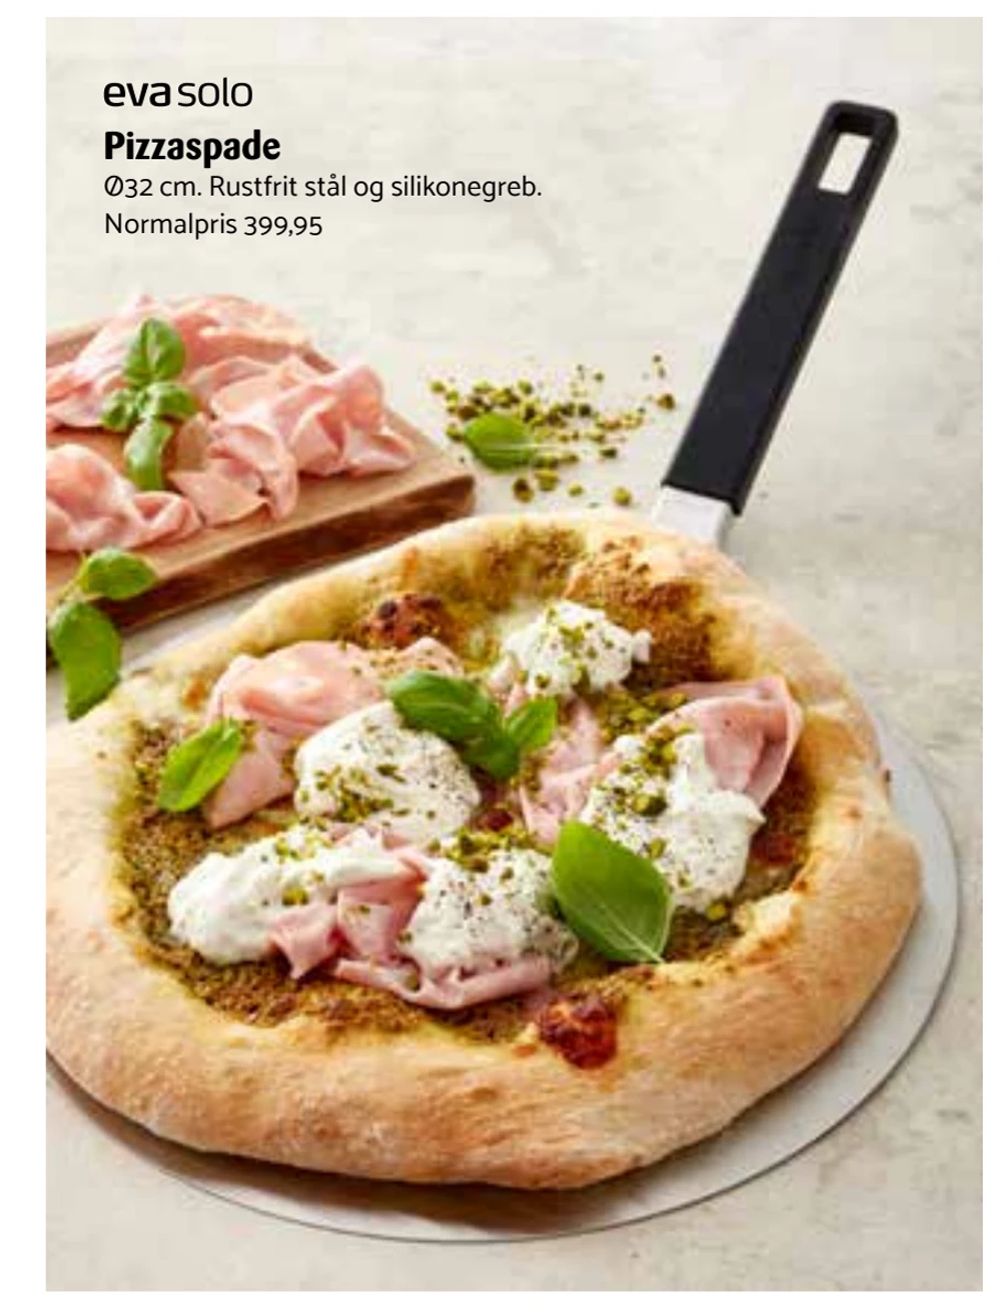 Tilbud på Pizzaspade fra Kop & Kande til 399,95 kr.